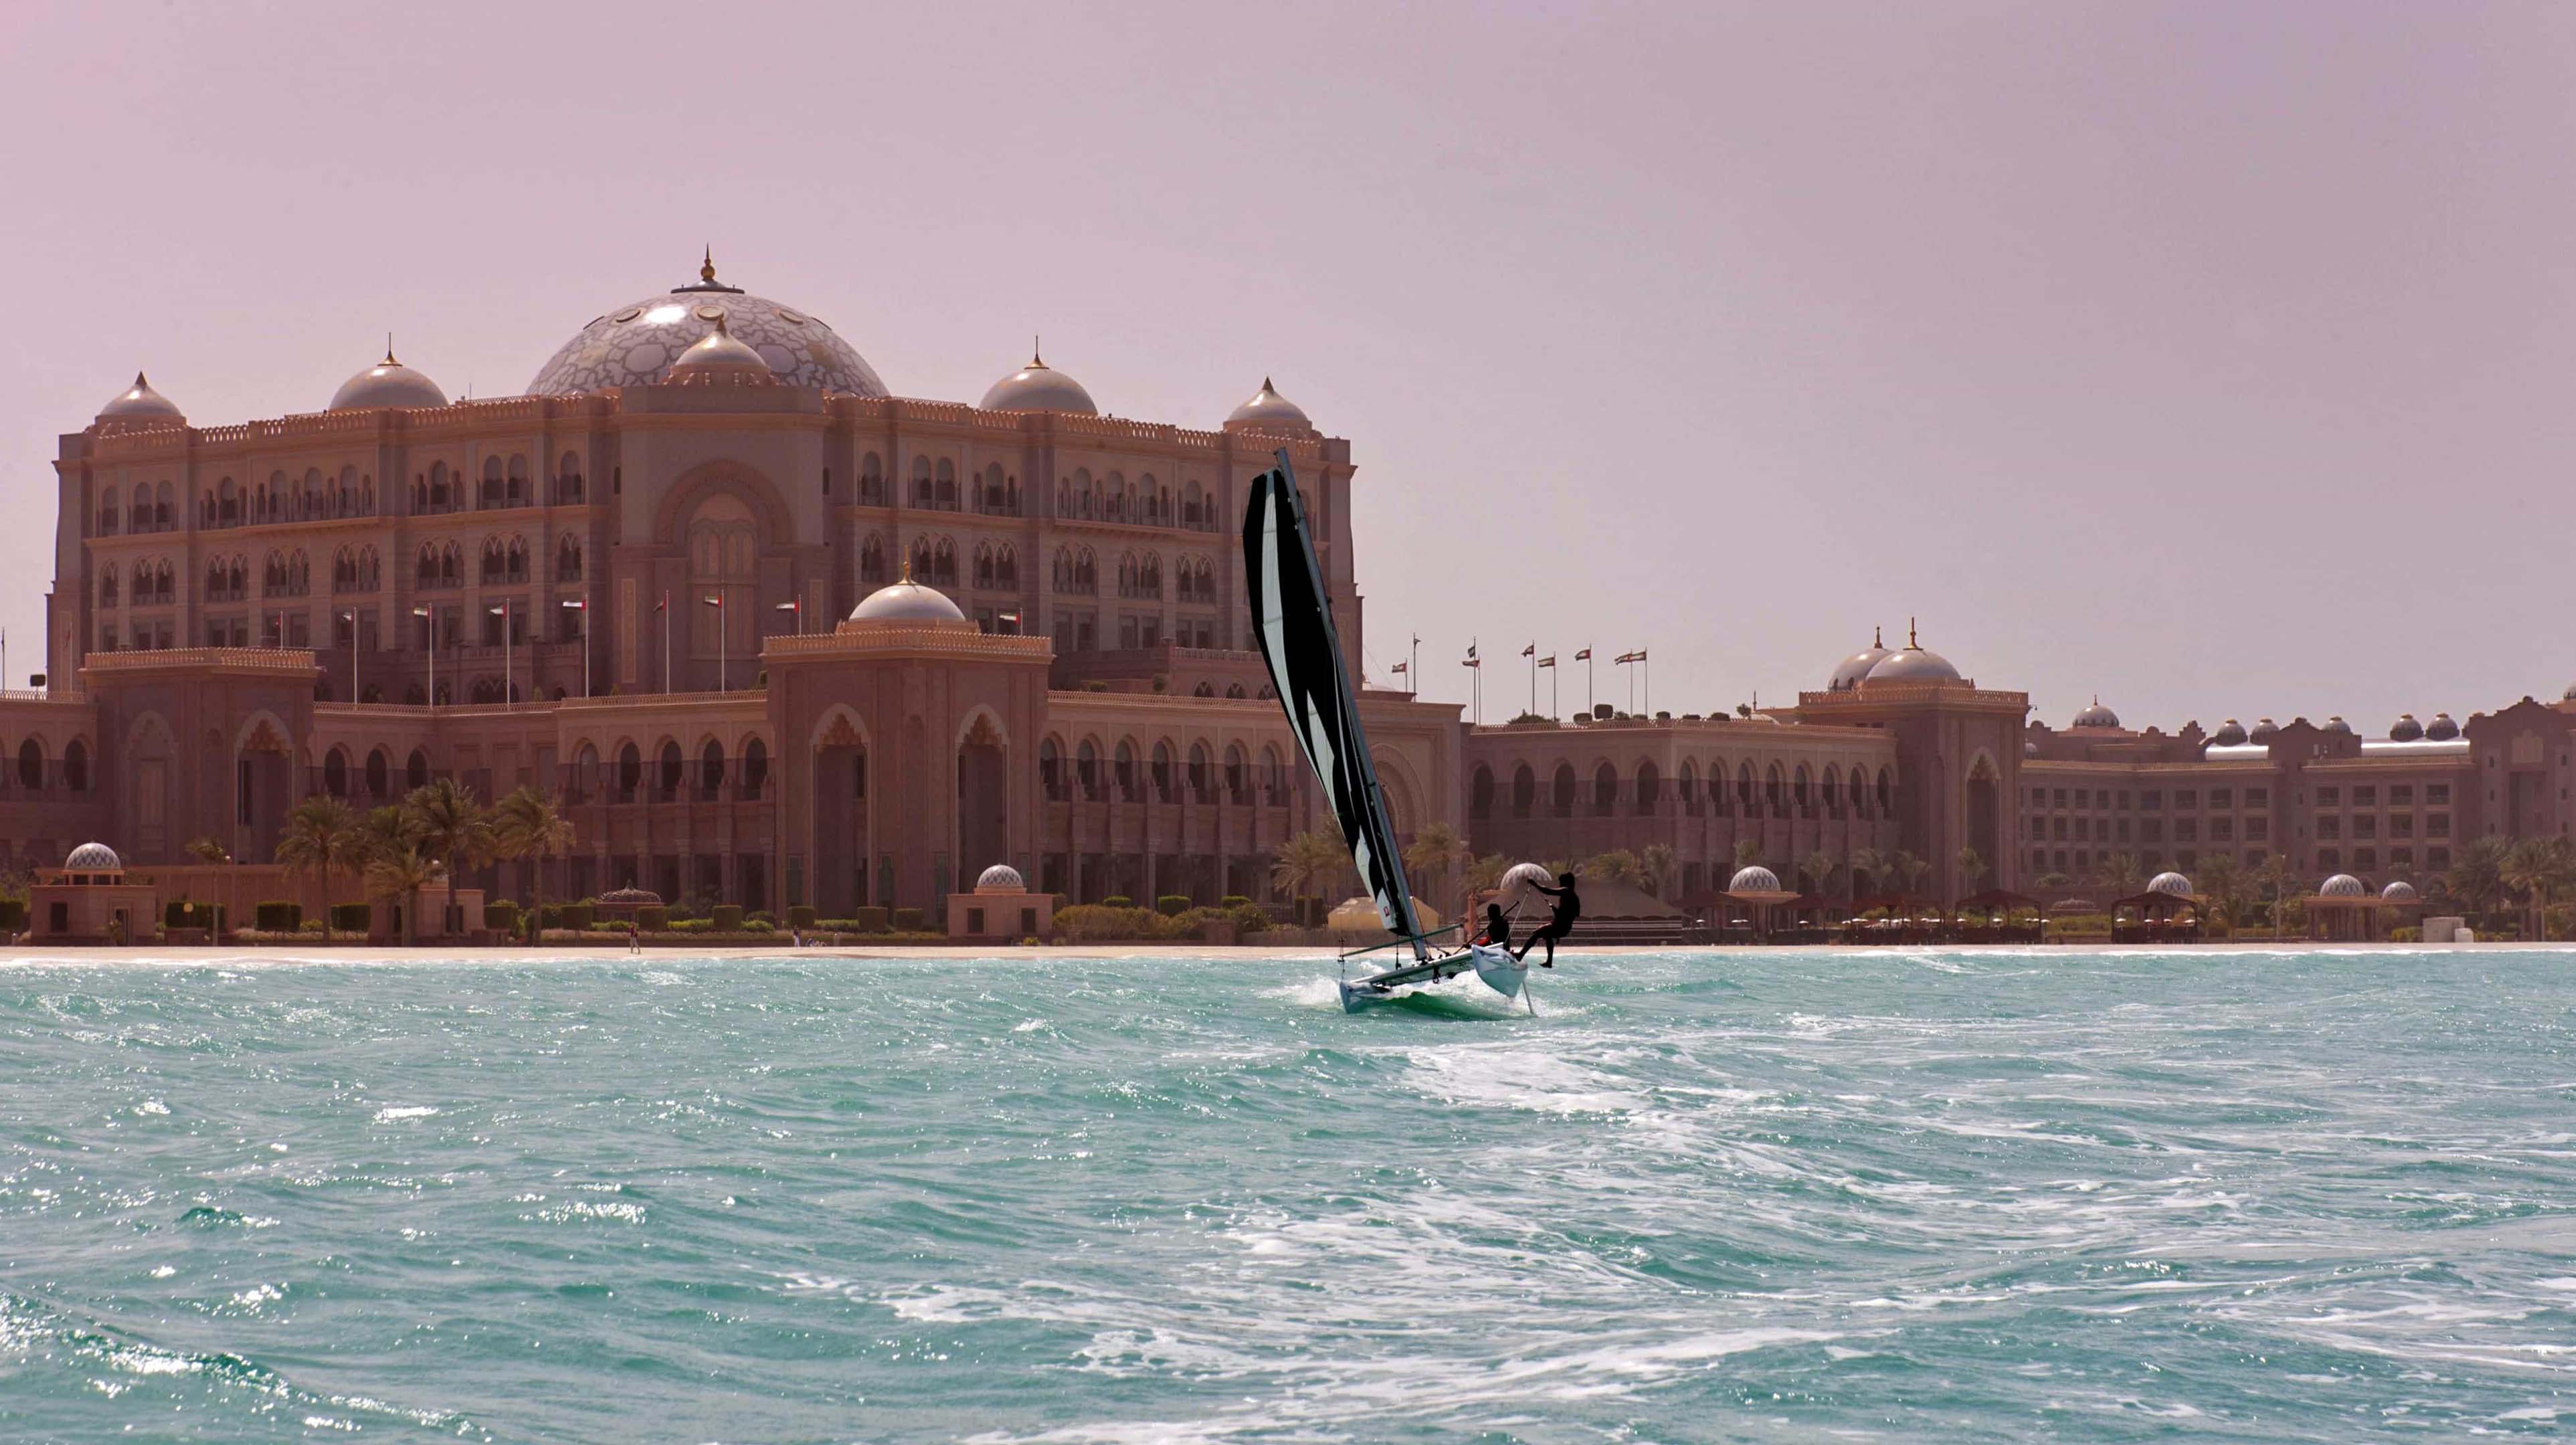 Marina de l’Emirates Palace